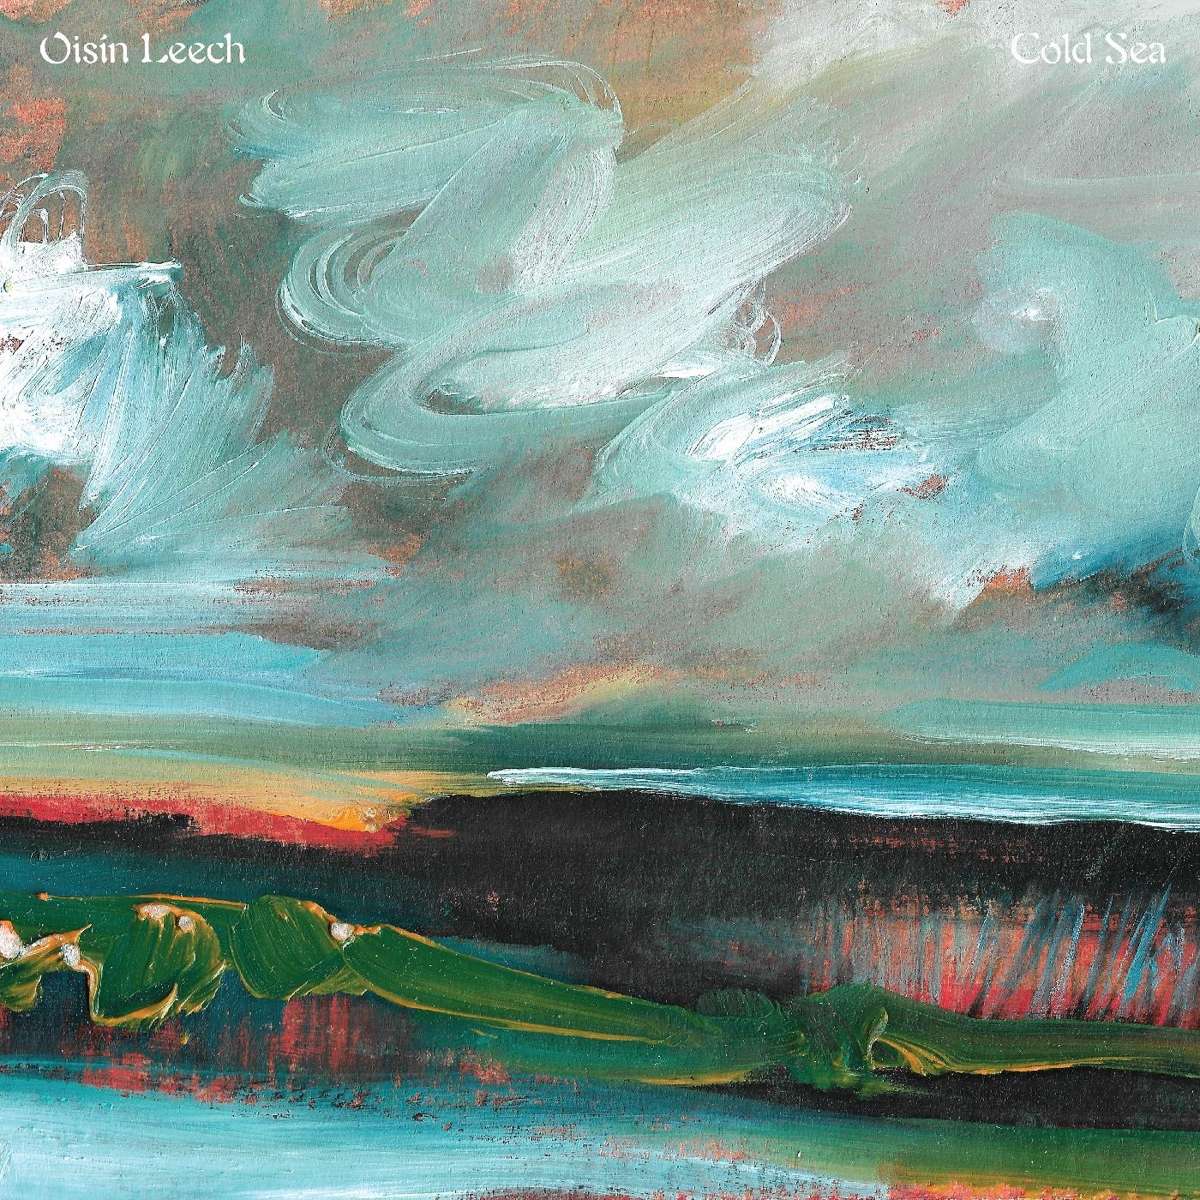 Oisin Leech - Cold Sea - 33RPM